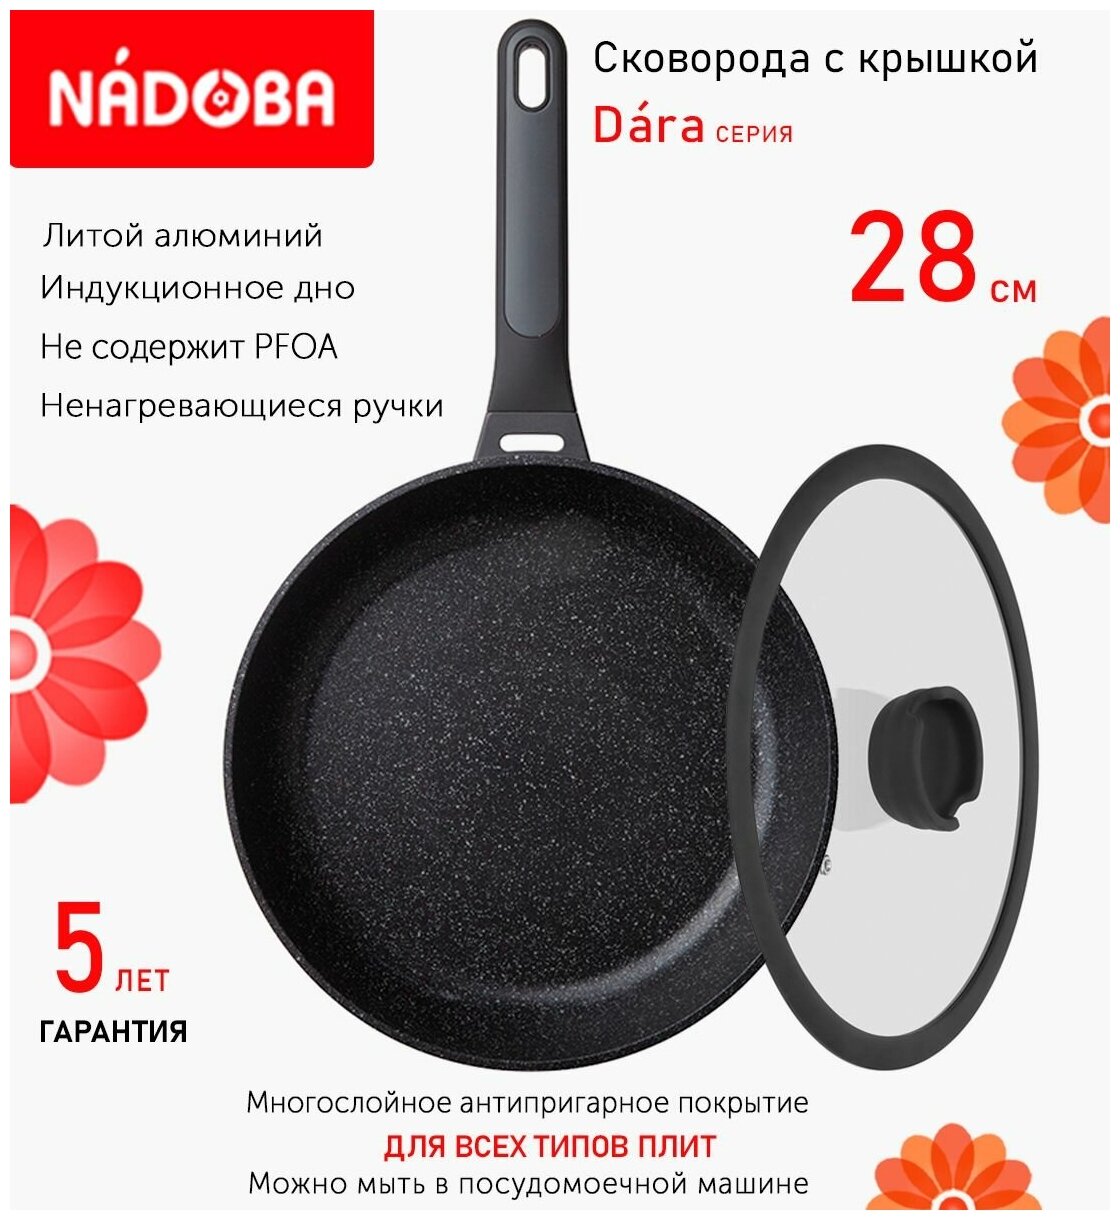 Сковорода с крышкой NADOBA 28см, серия "Dara" (арт. 729116/751011)